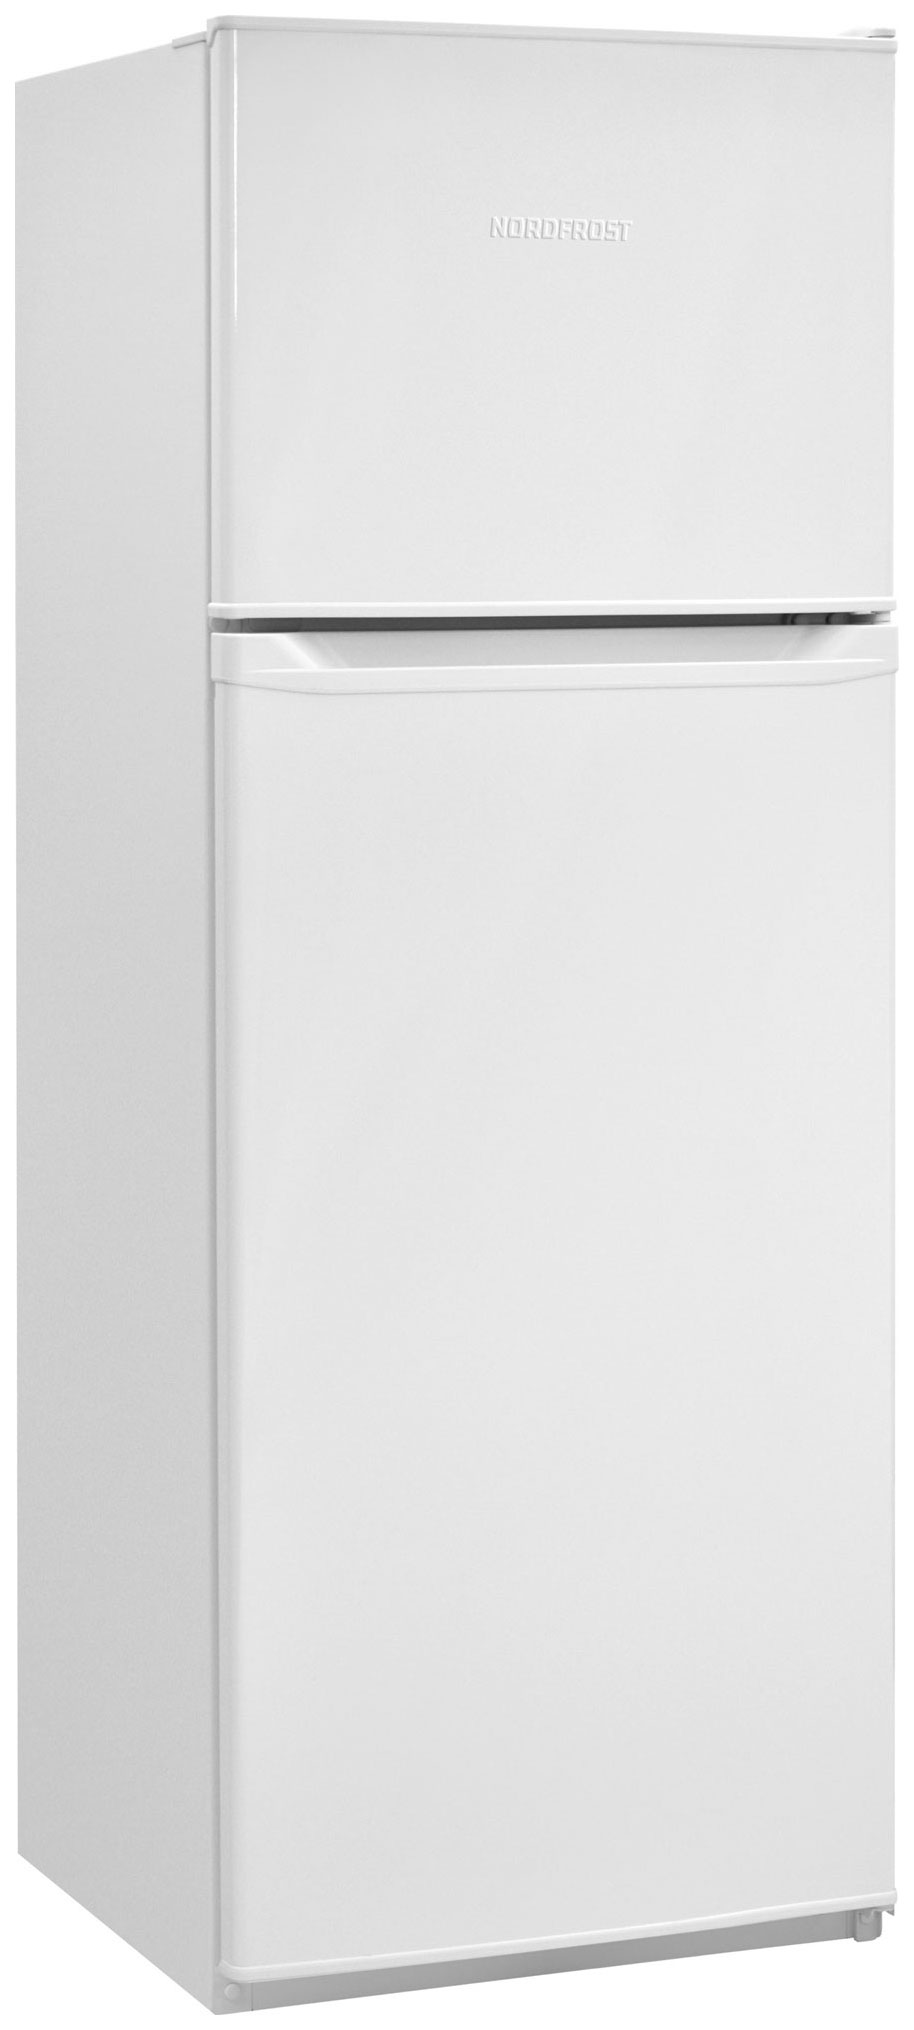 Холодильник NordFrost NRT 145 032 белый многокамерный холодильник nordfrost rfq 510 nfgw inverter